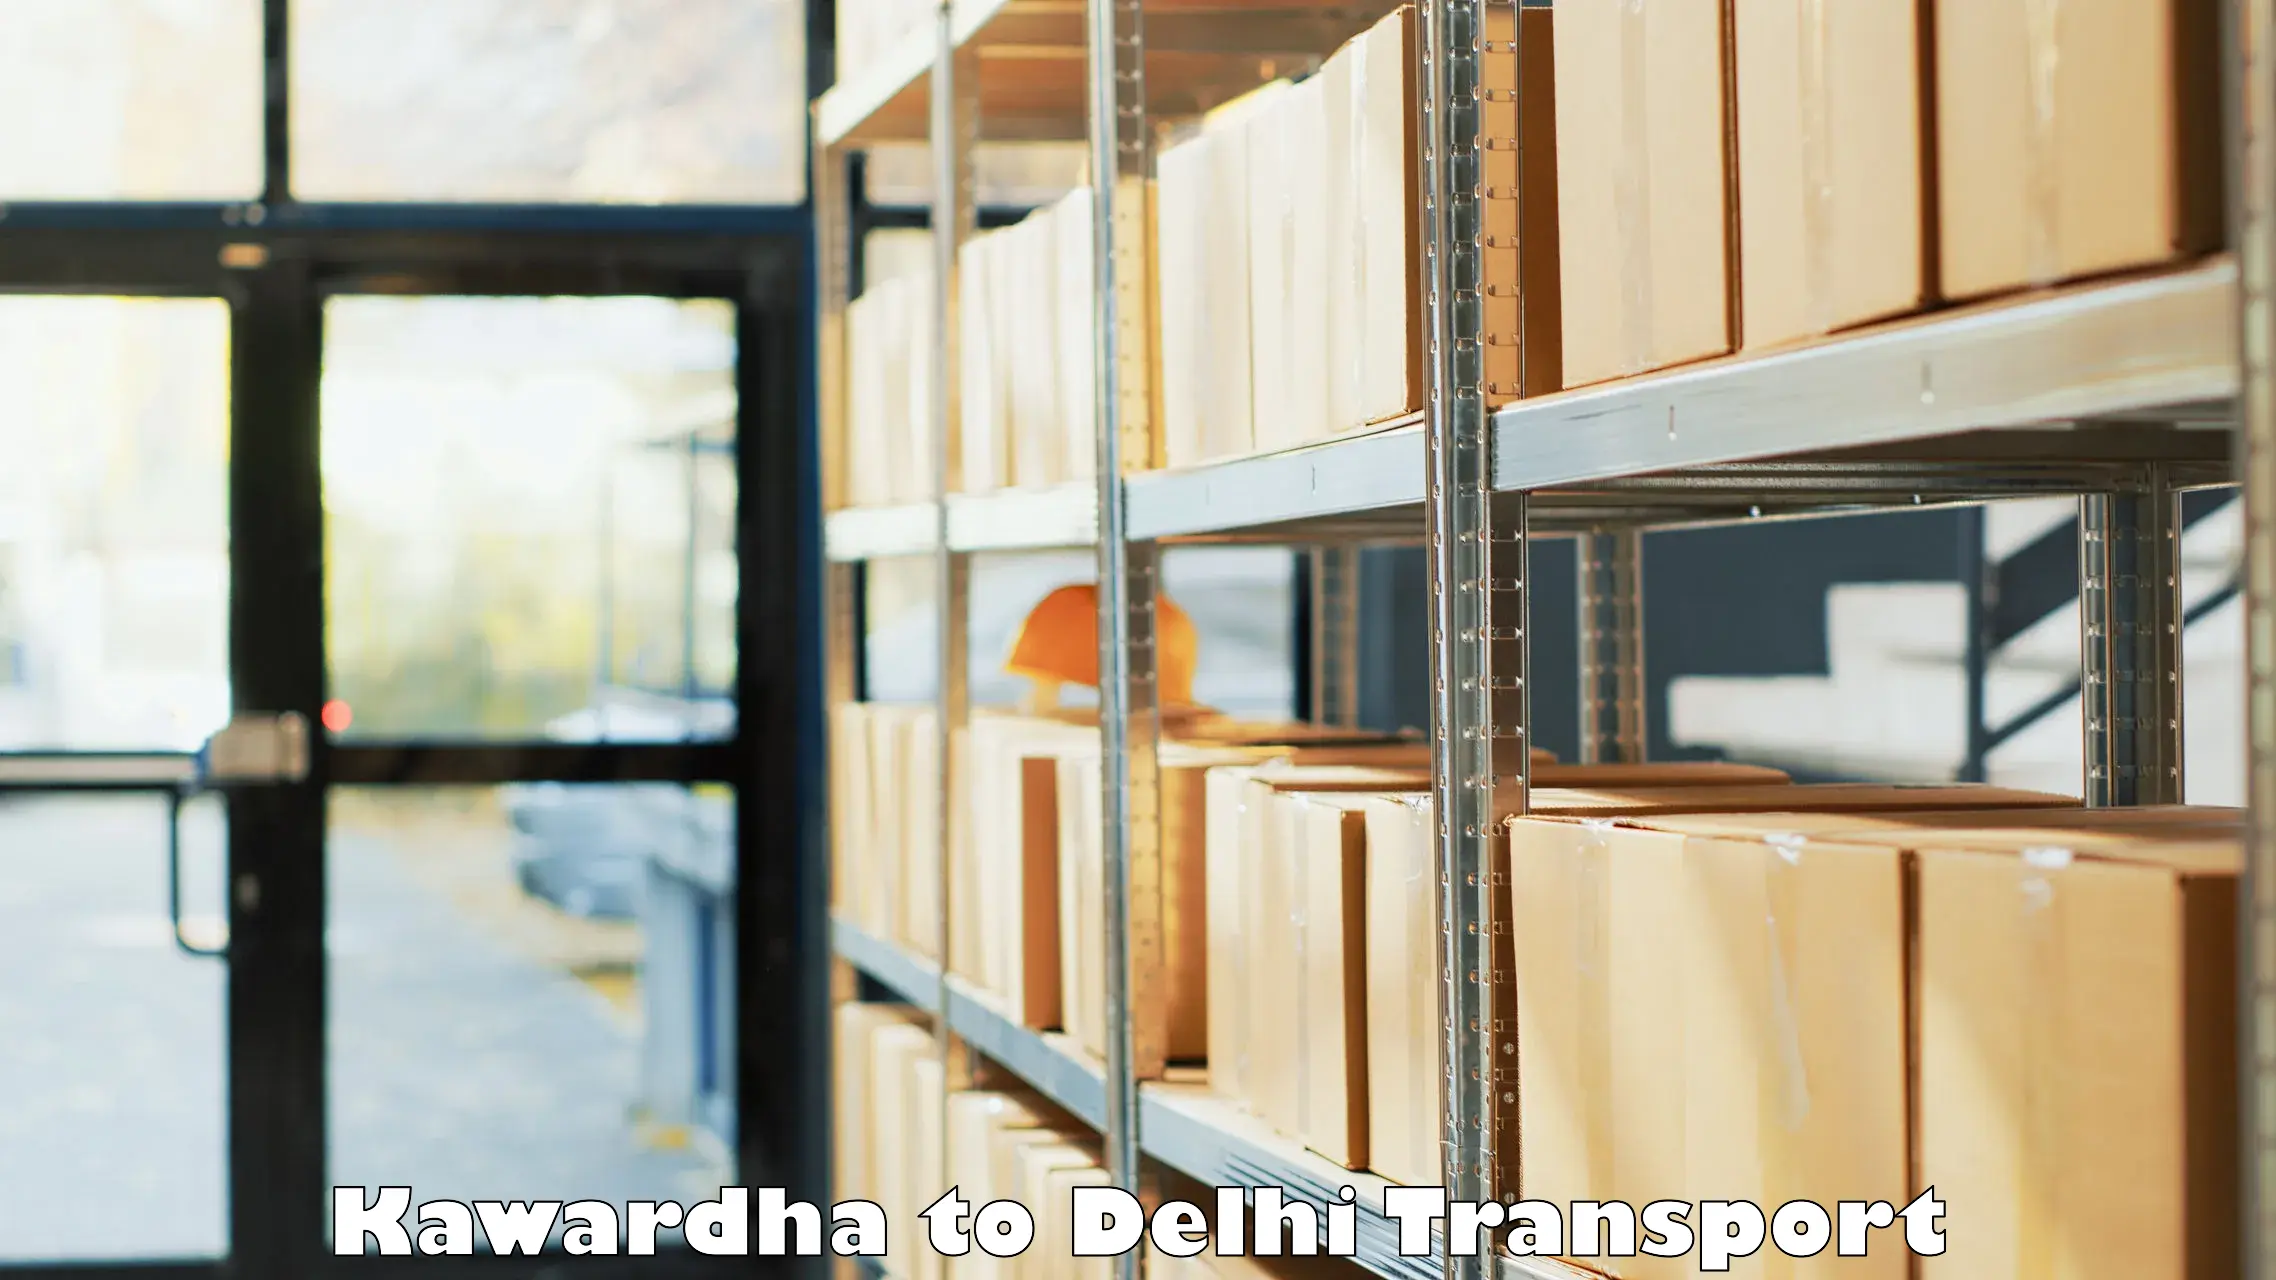 Transportation solution services Kawardha to Delhi